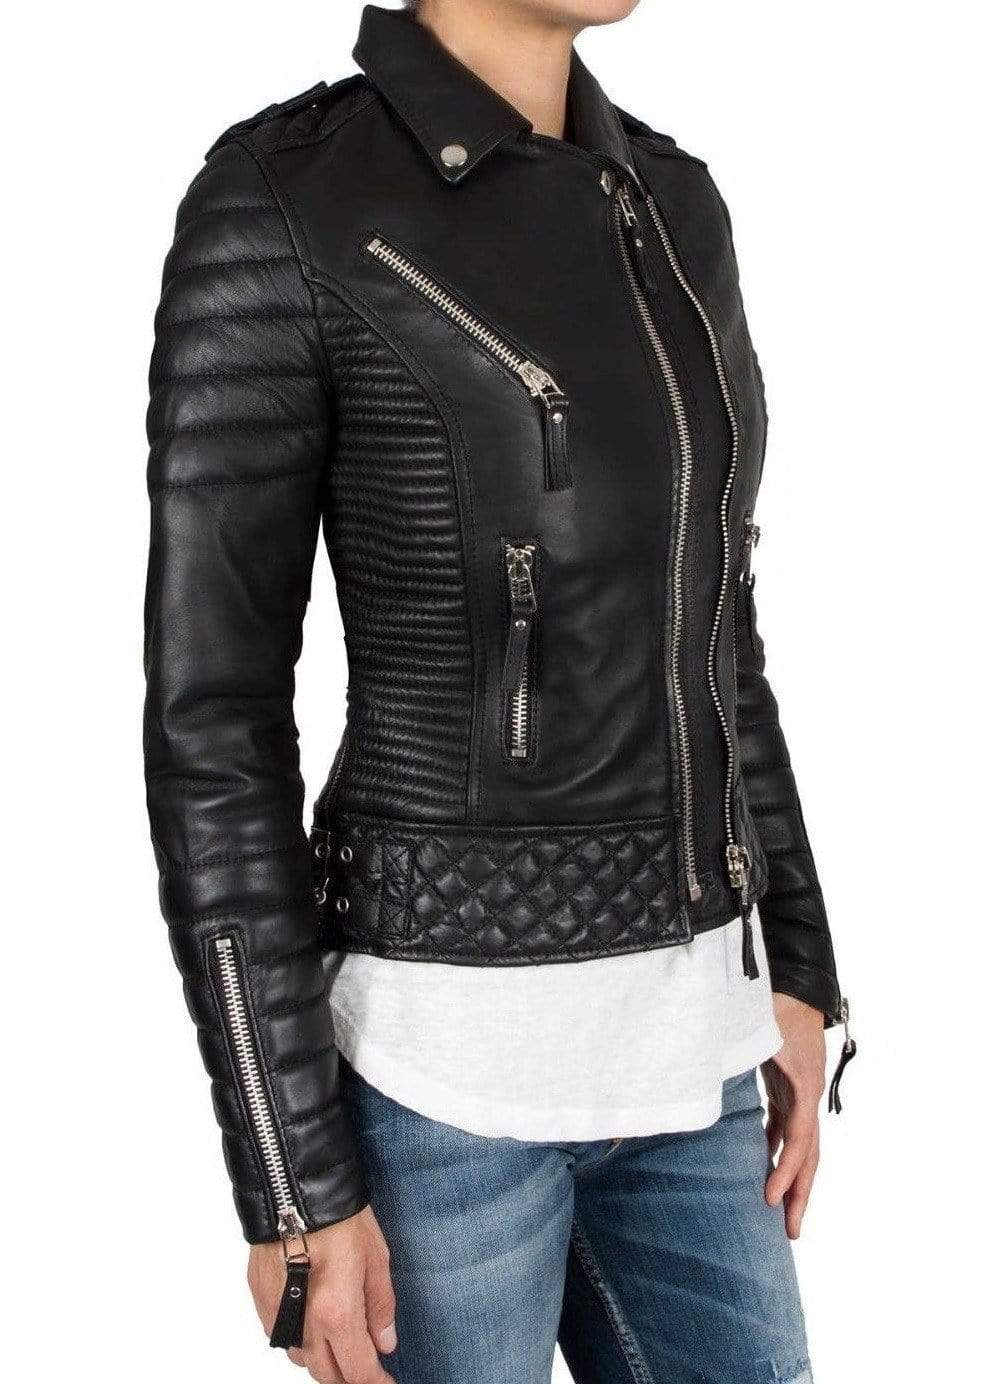 Handmade Leather Skin Women Black Padded Brando Leather Jacket - leathersguru